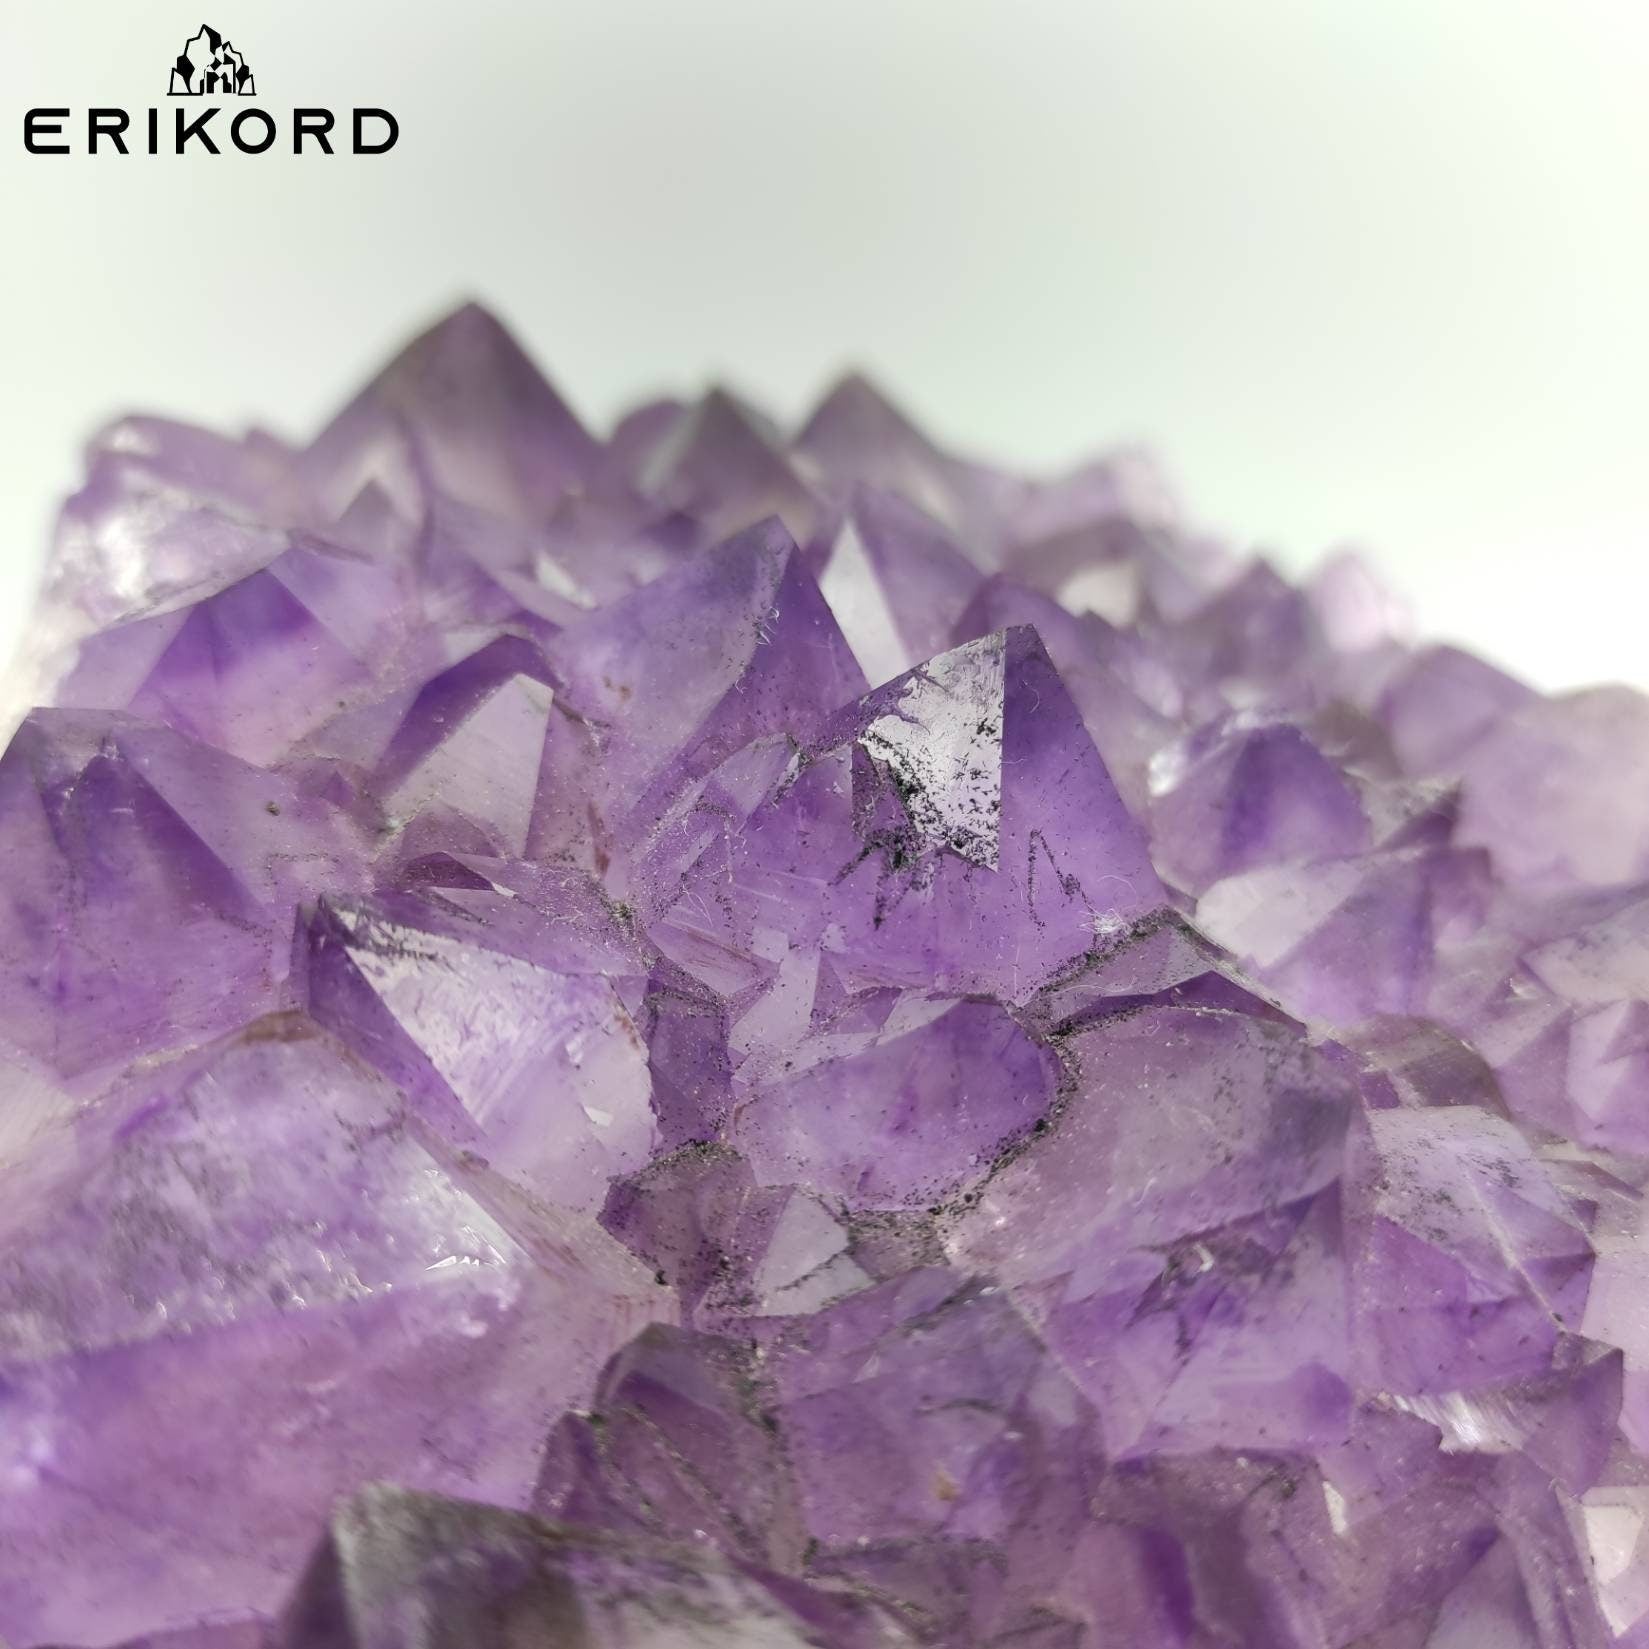 3.6 kg Amethyst Crystal Cluster Purple Amethyst from South Brazil Amethyst Gemstone Raw Amethyst Rough Amethyst Desk Crystal Natural Crystal